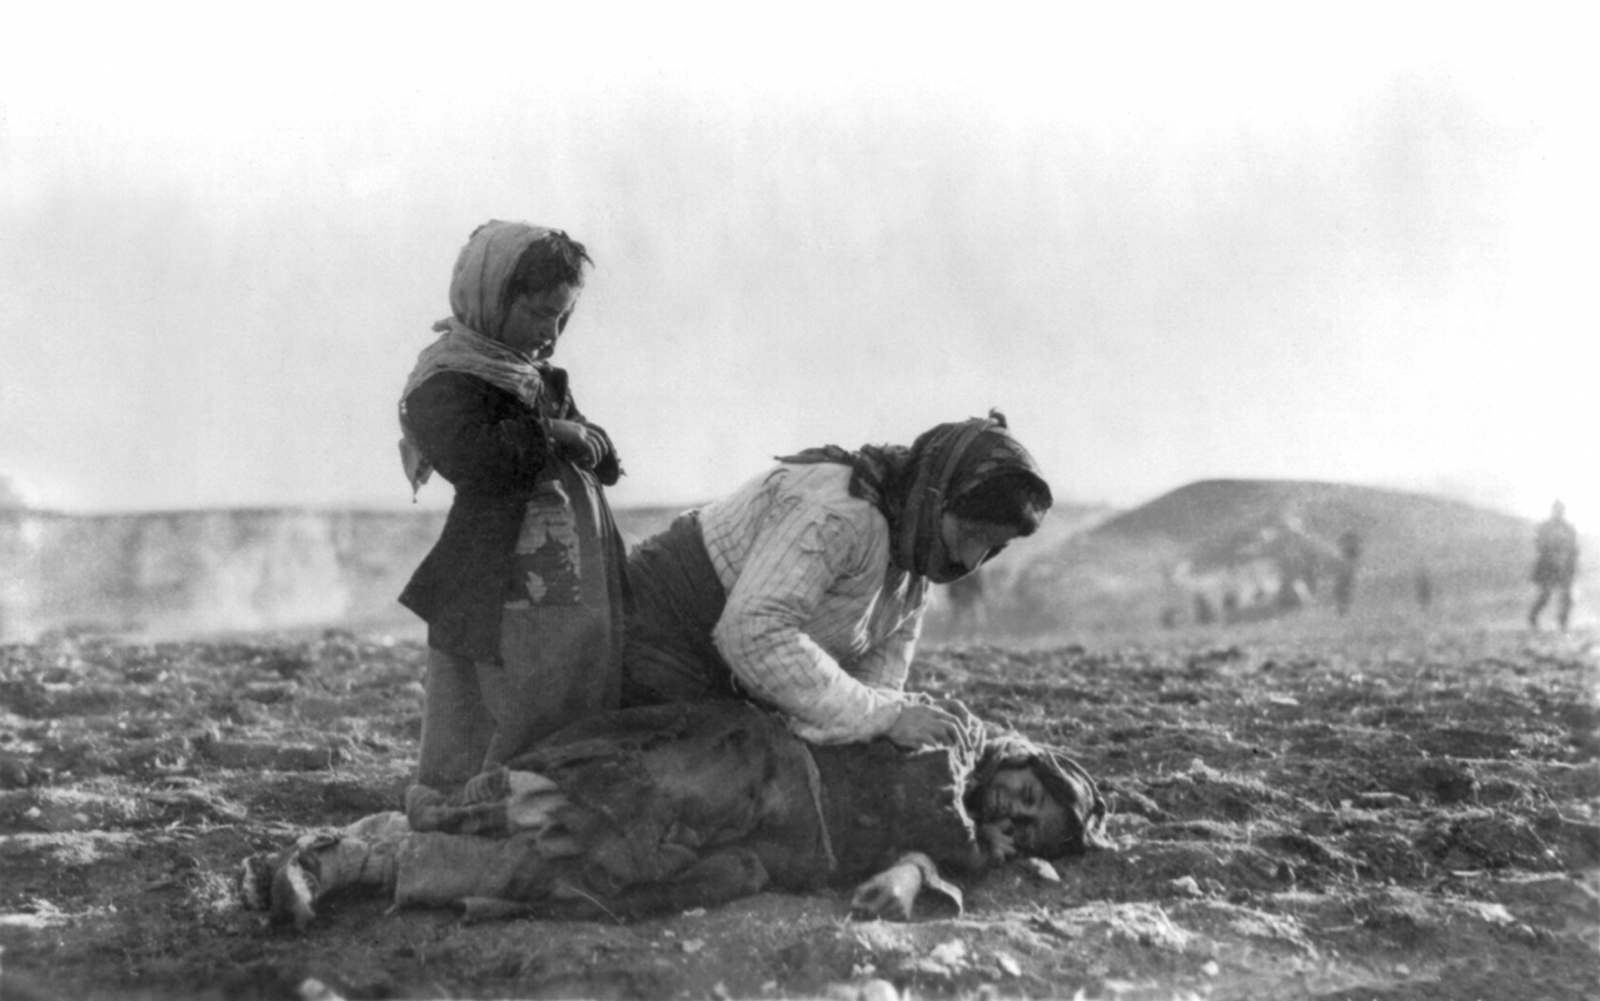 אשה ארמנית כורעת ליד ילד מת בשדה 1915-1919 צילום: מתוך ויקיפדיה